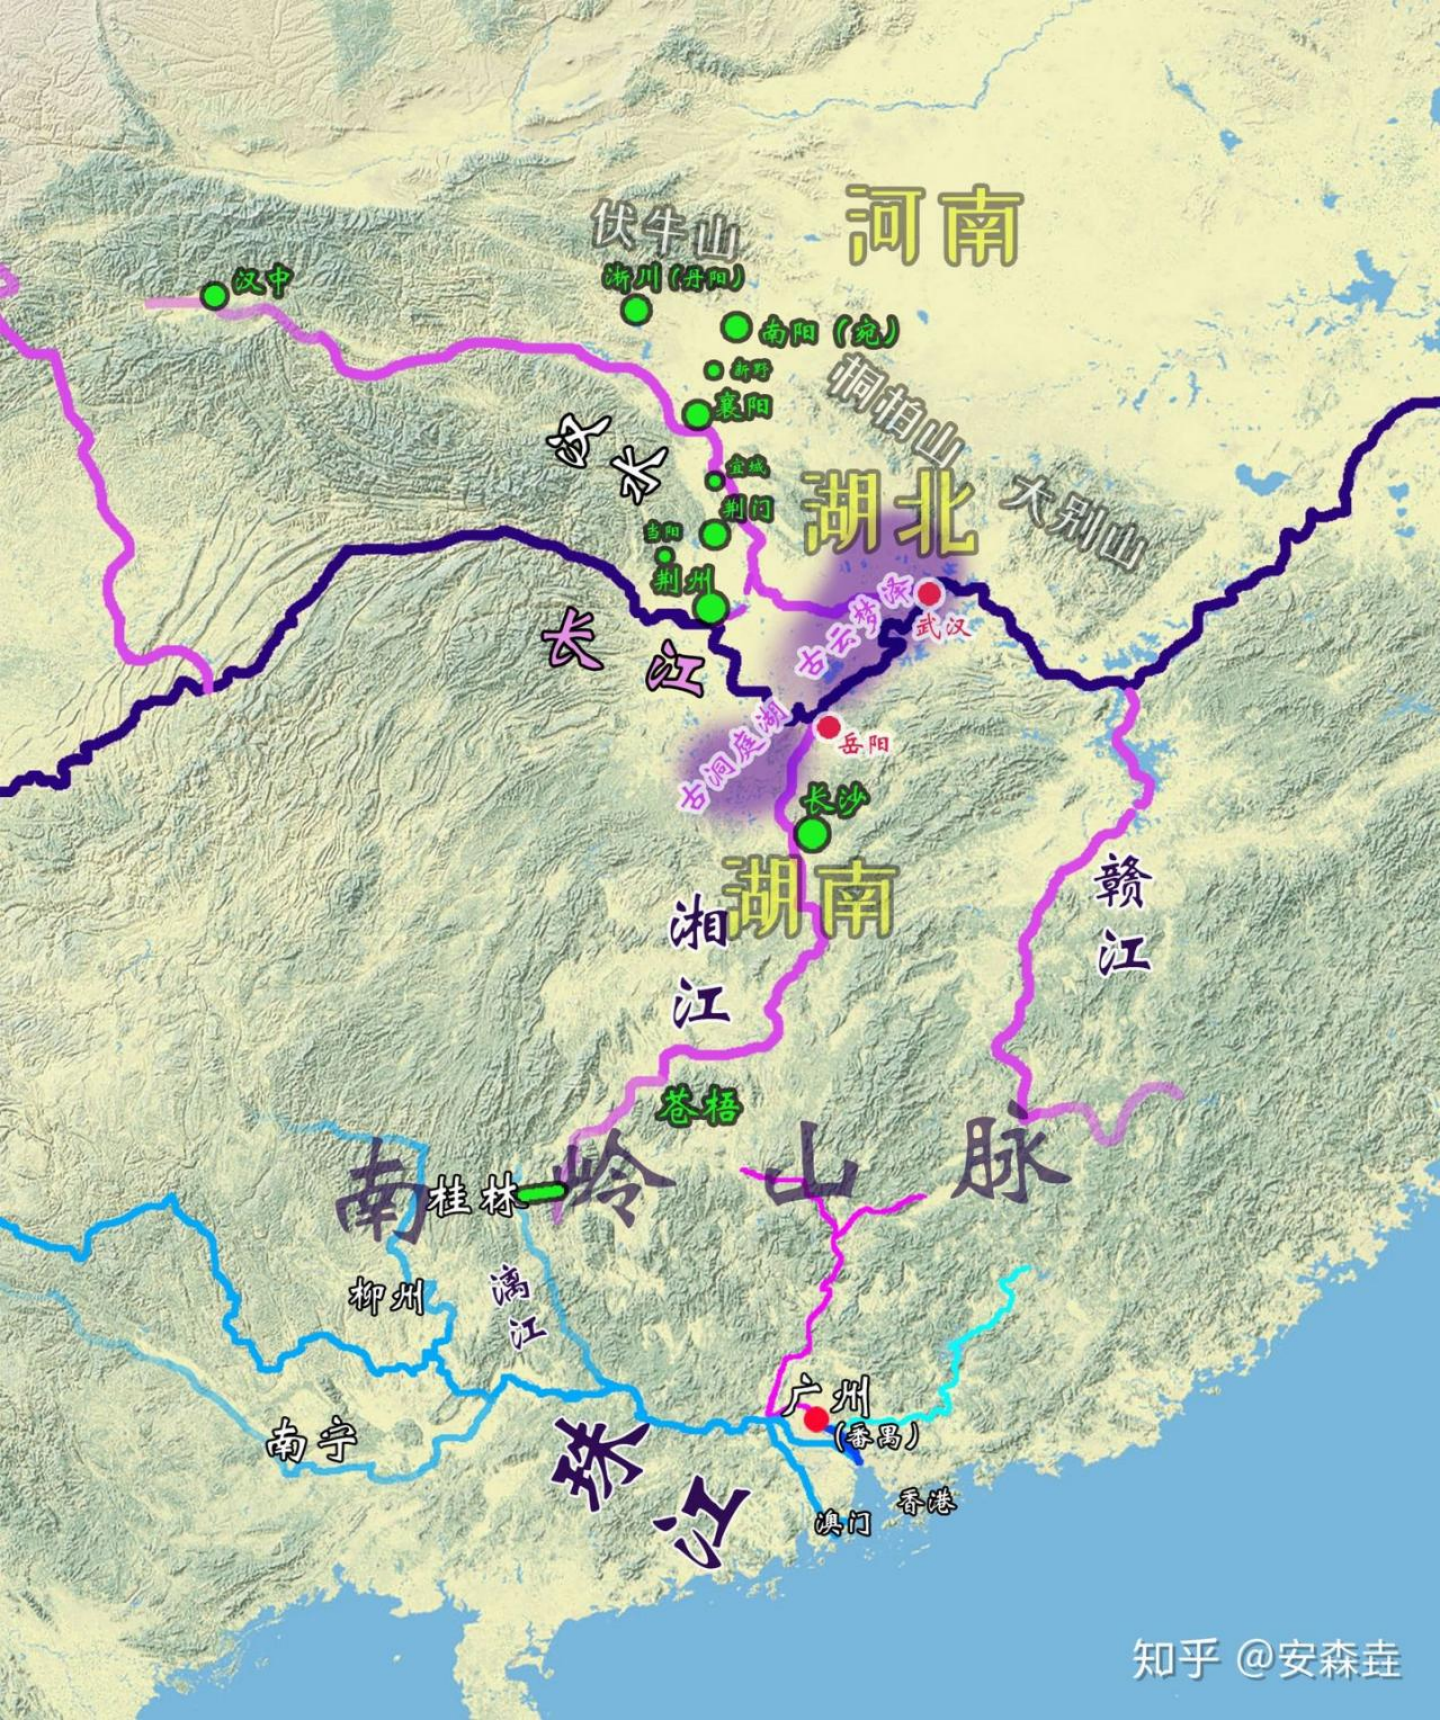 图 24：从长江—湘江—漓江—珠江一带的「水运动脉」的构建，秦始皇最终征服广东广西示意图